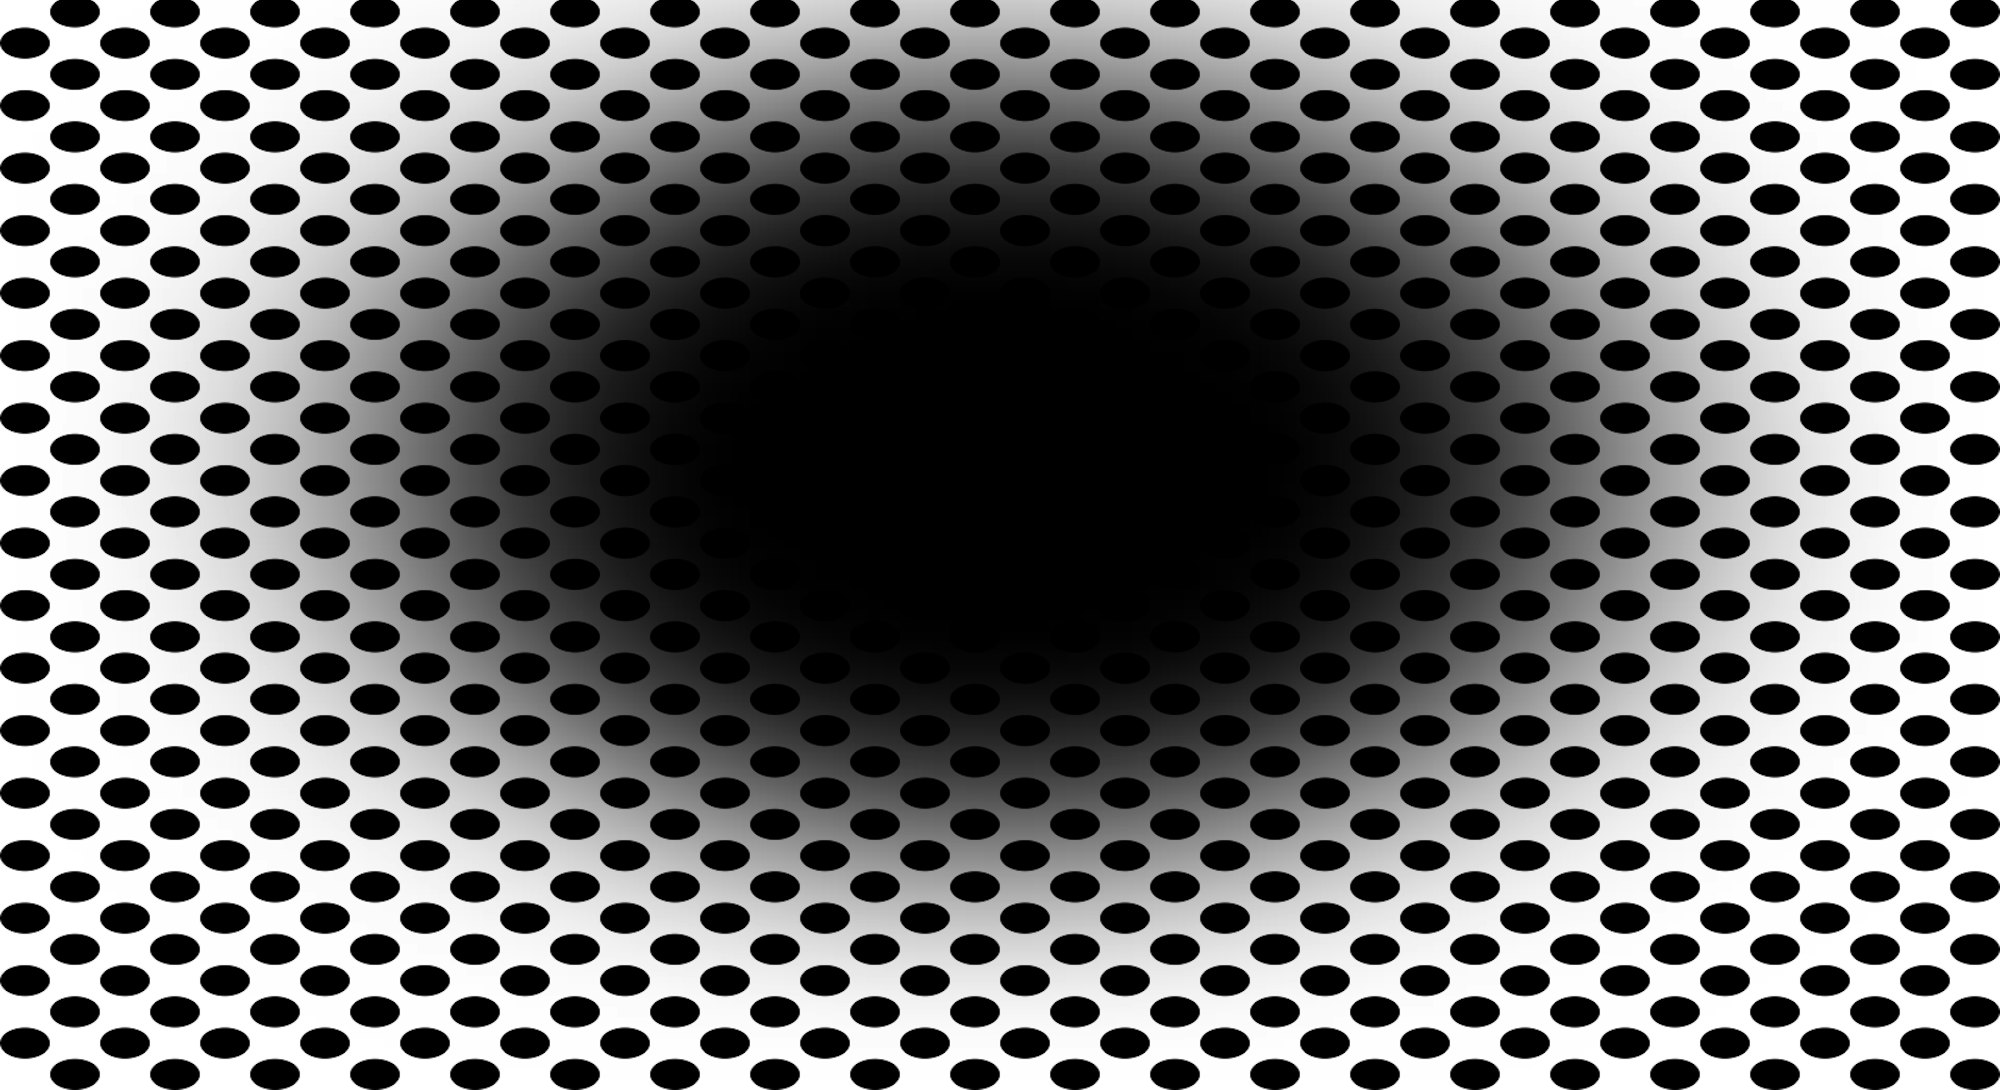 Black hole illusion on white background